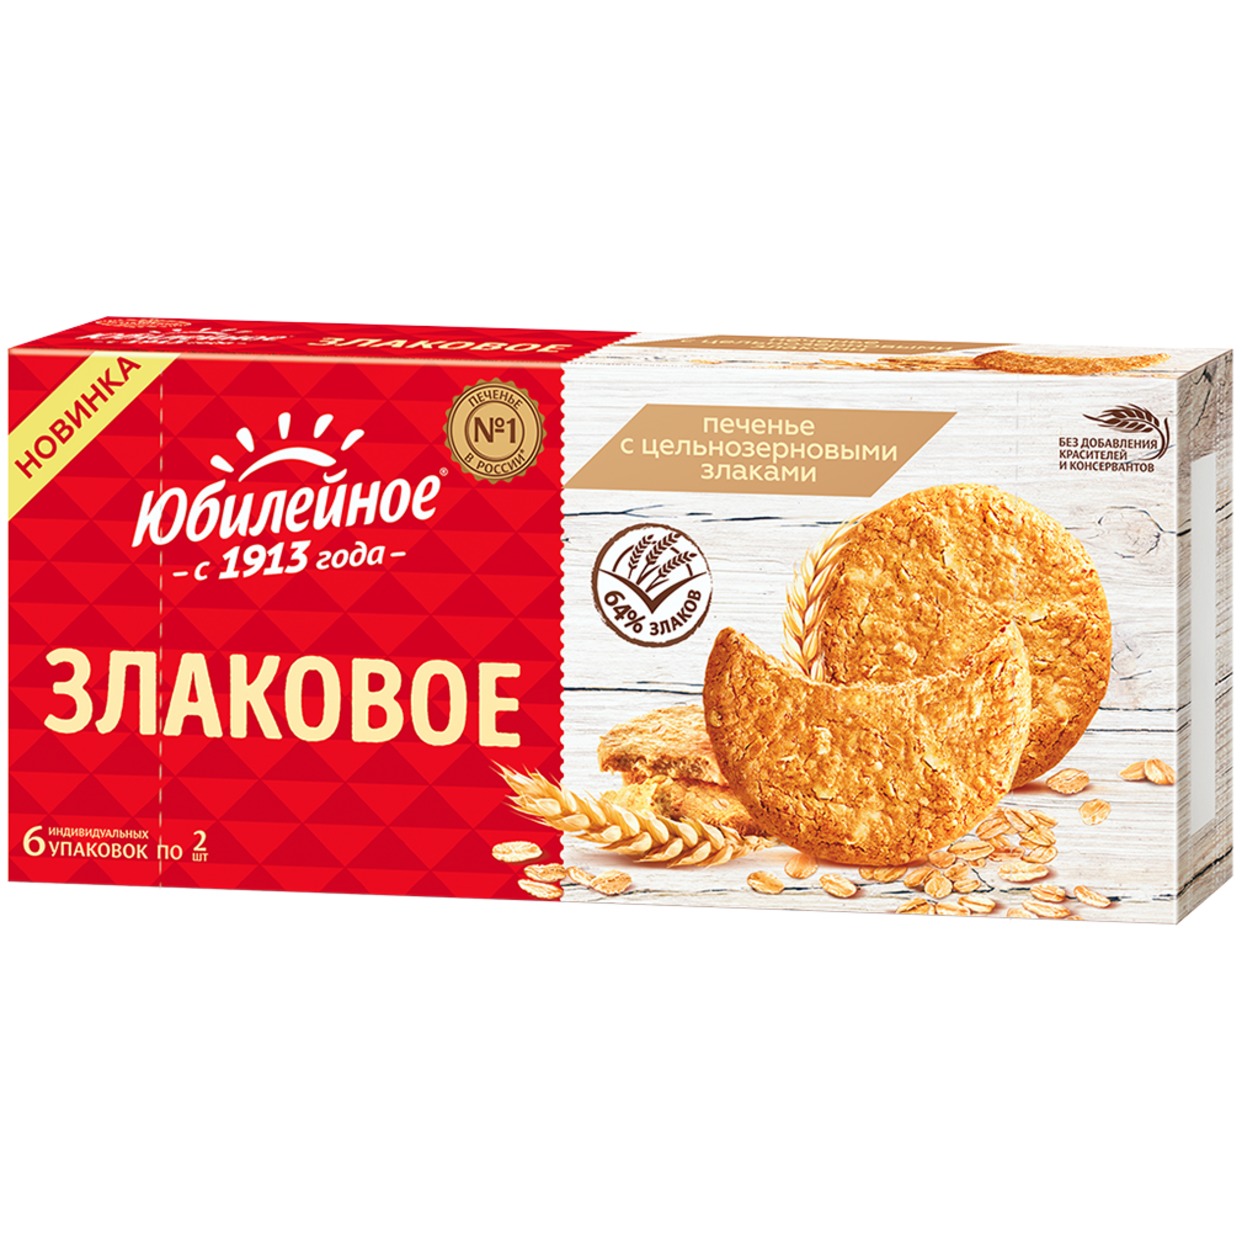 Печенье Юбилейное с цельнозерновыми злаками, 171 гр по акции в Пятерочке